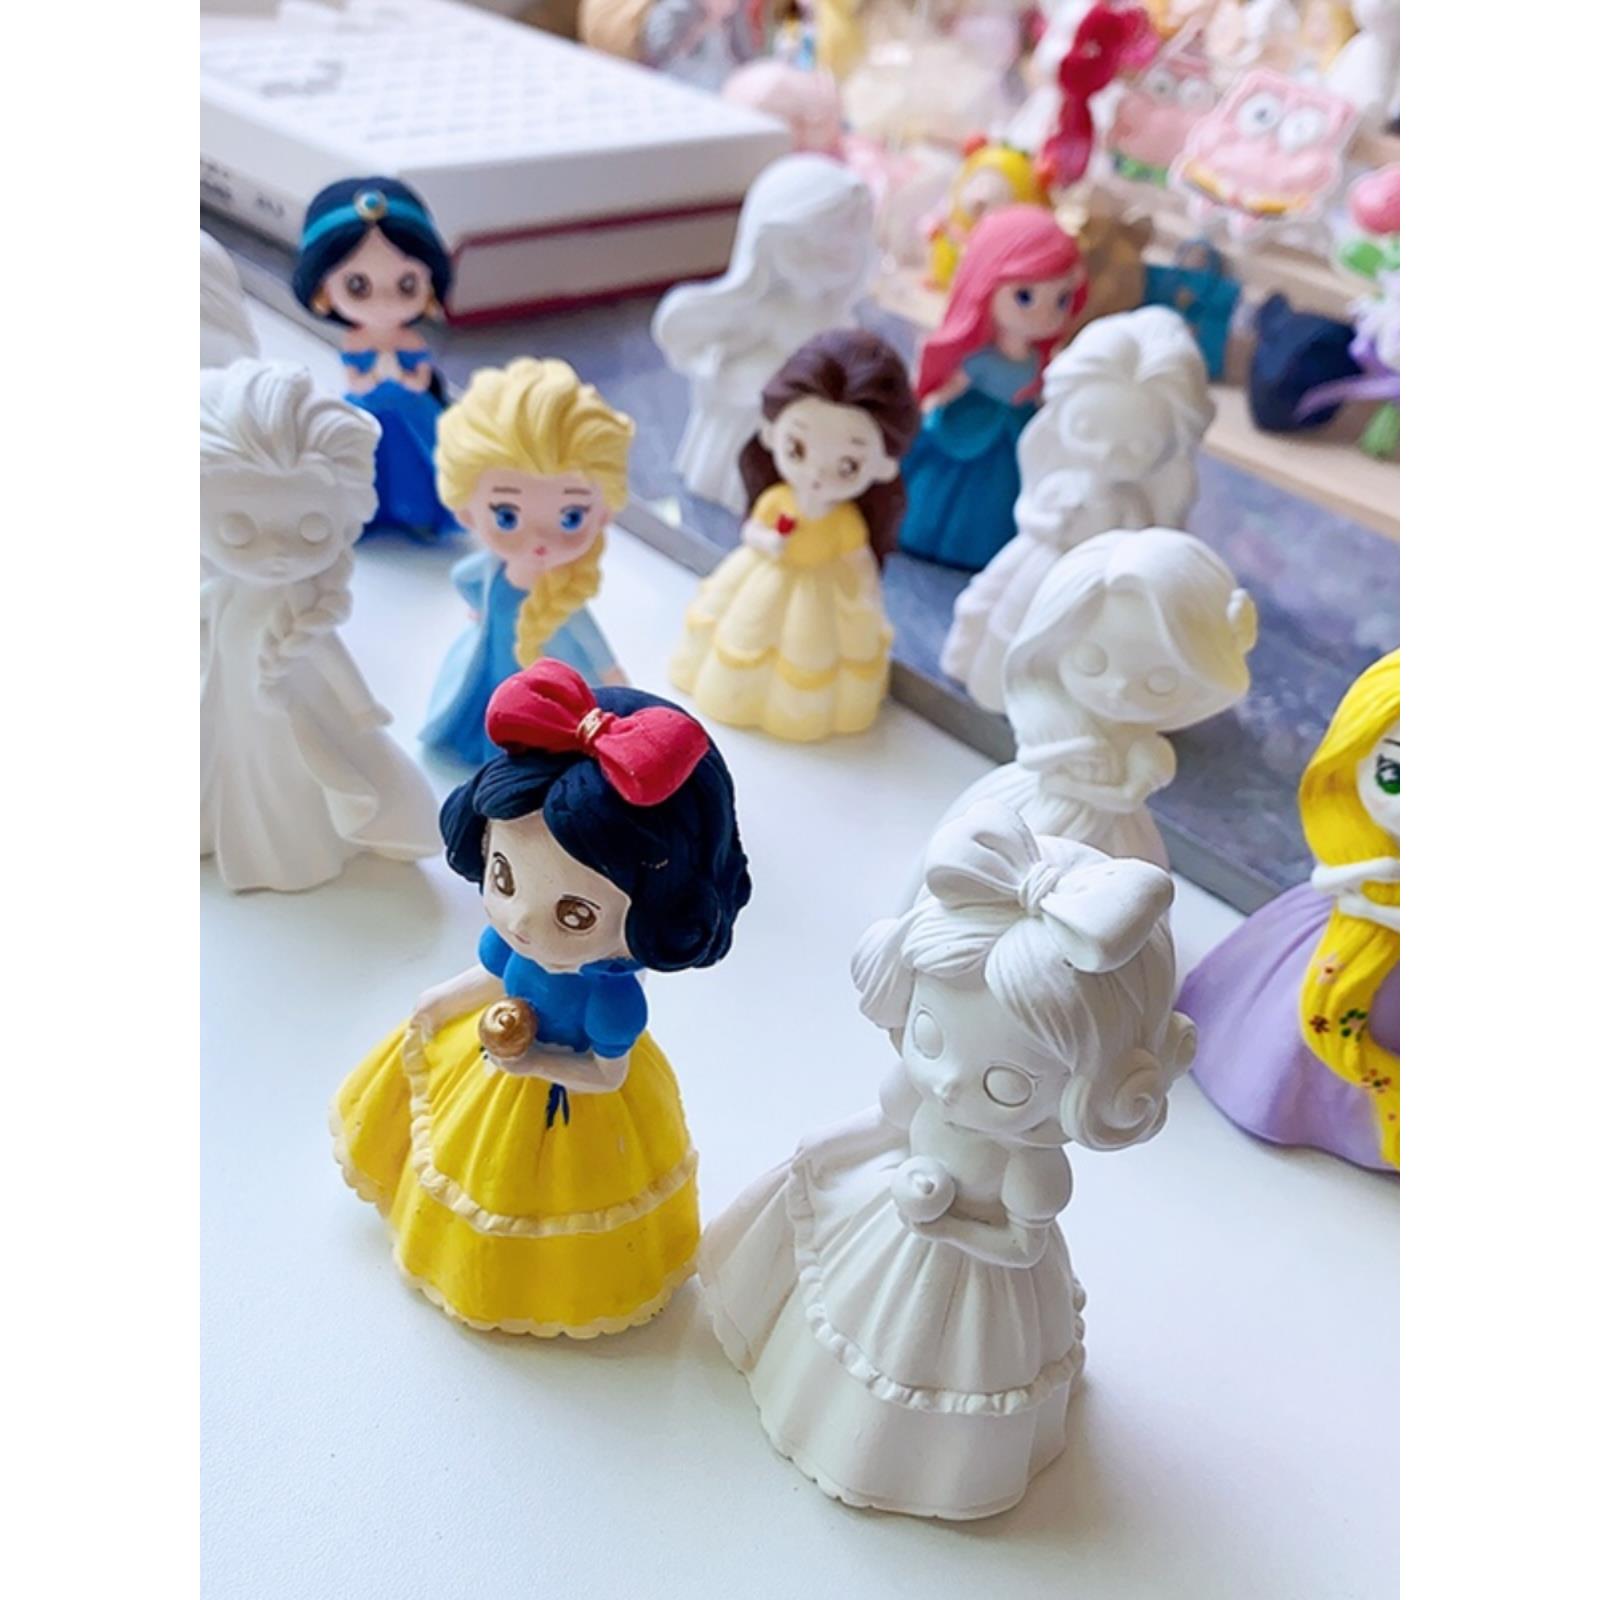 迷你石膏娃娃涂色彩绘3D立体小公主儿童DIY创意玩具涂鸦手作艾莎